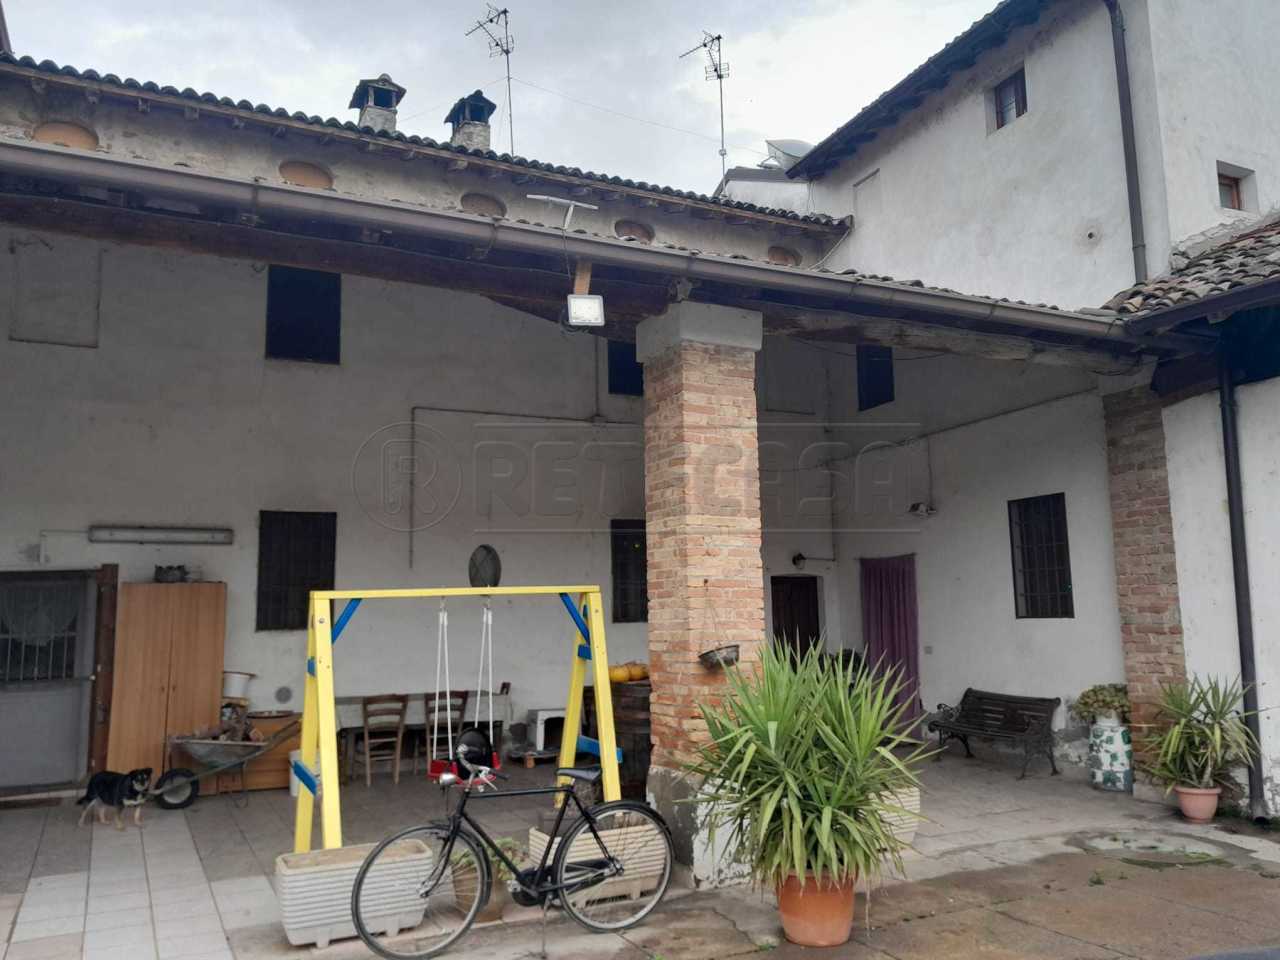 Rustico / Casale in vendita a Montodine, 6 locali, prezzo € 57.000 | PortaleAgenzieImmobiliari.it